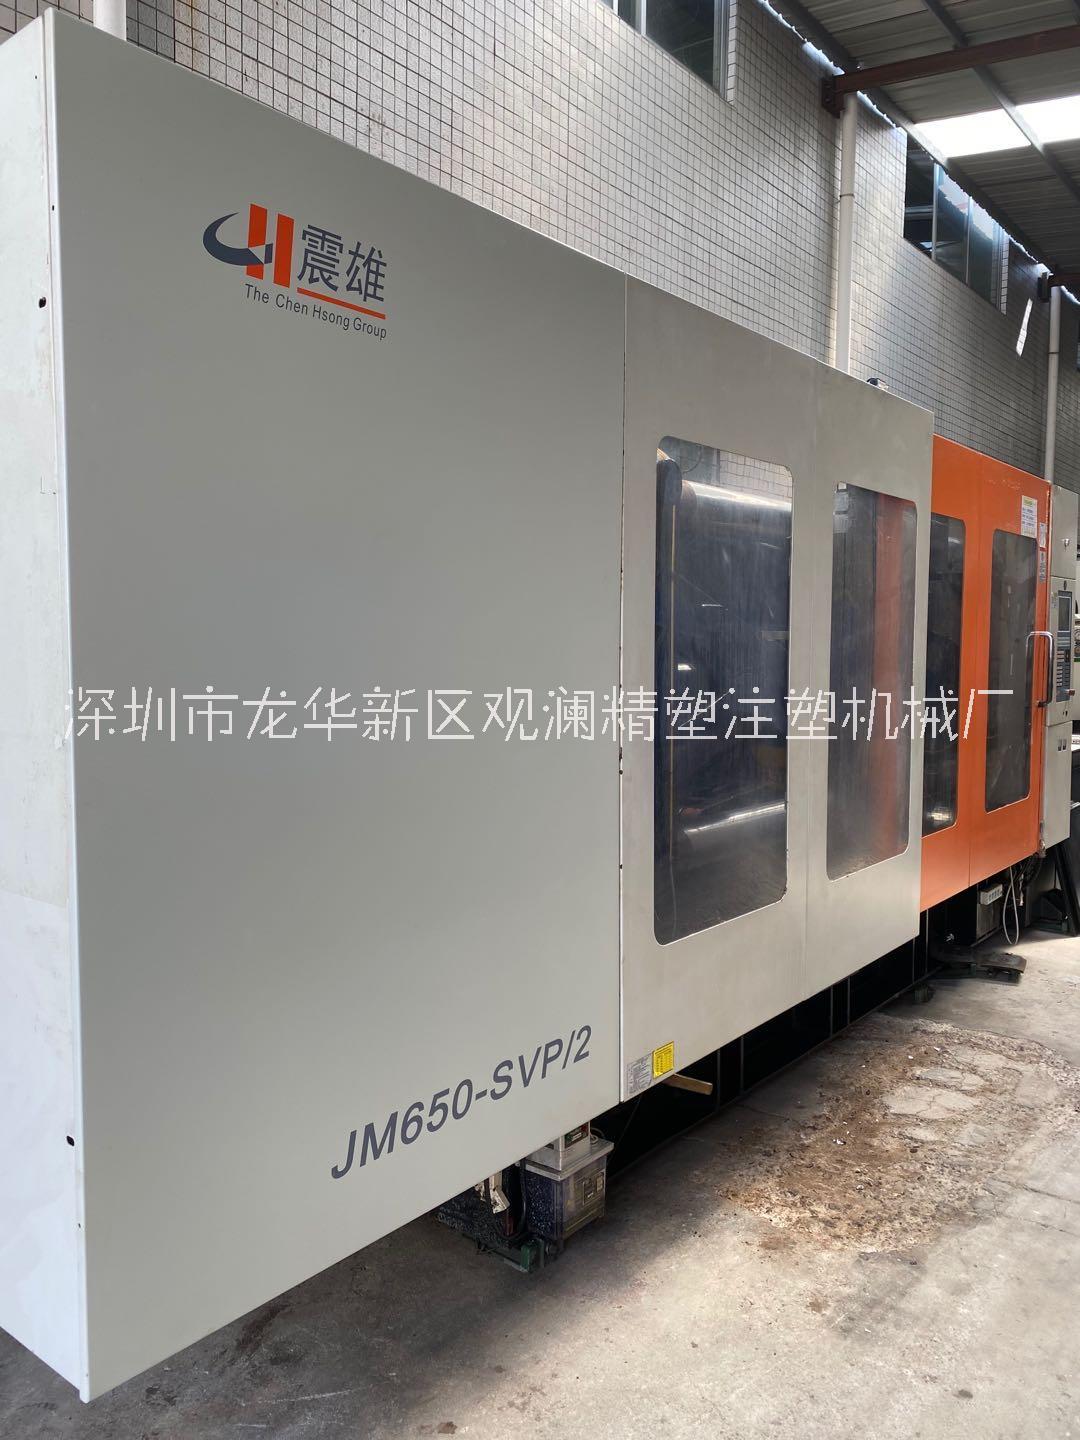 转让2017年出厂震雄注塑机JM650-SVP/2吨原装伺服卧式注塑机下模900，螺杆90，95成新二手注塑机出售